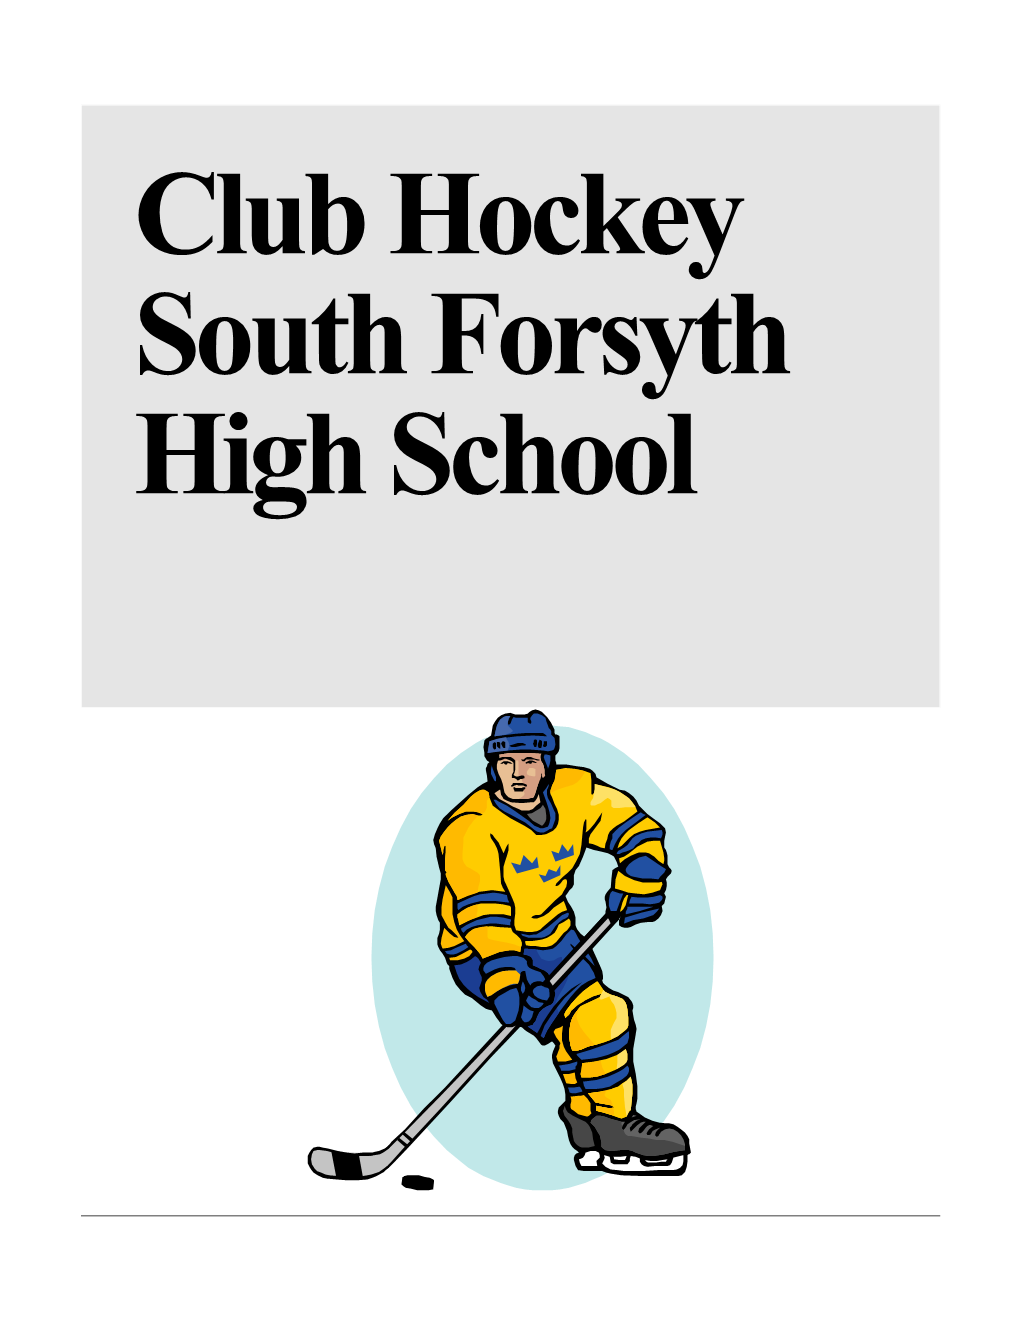 Club Hockey South Forsyth High School